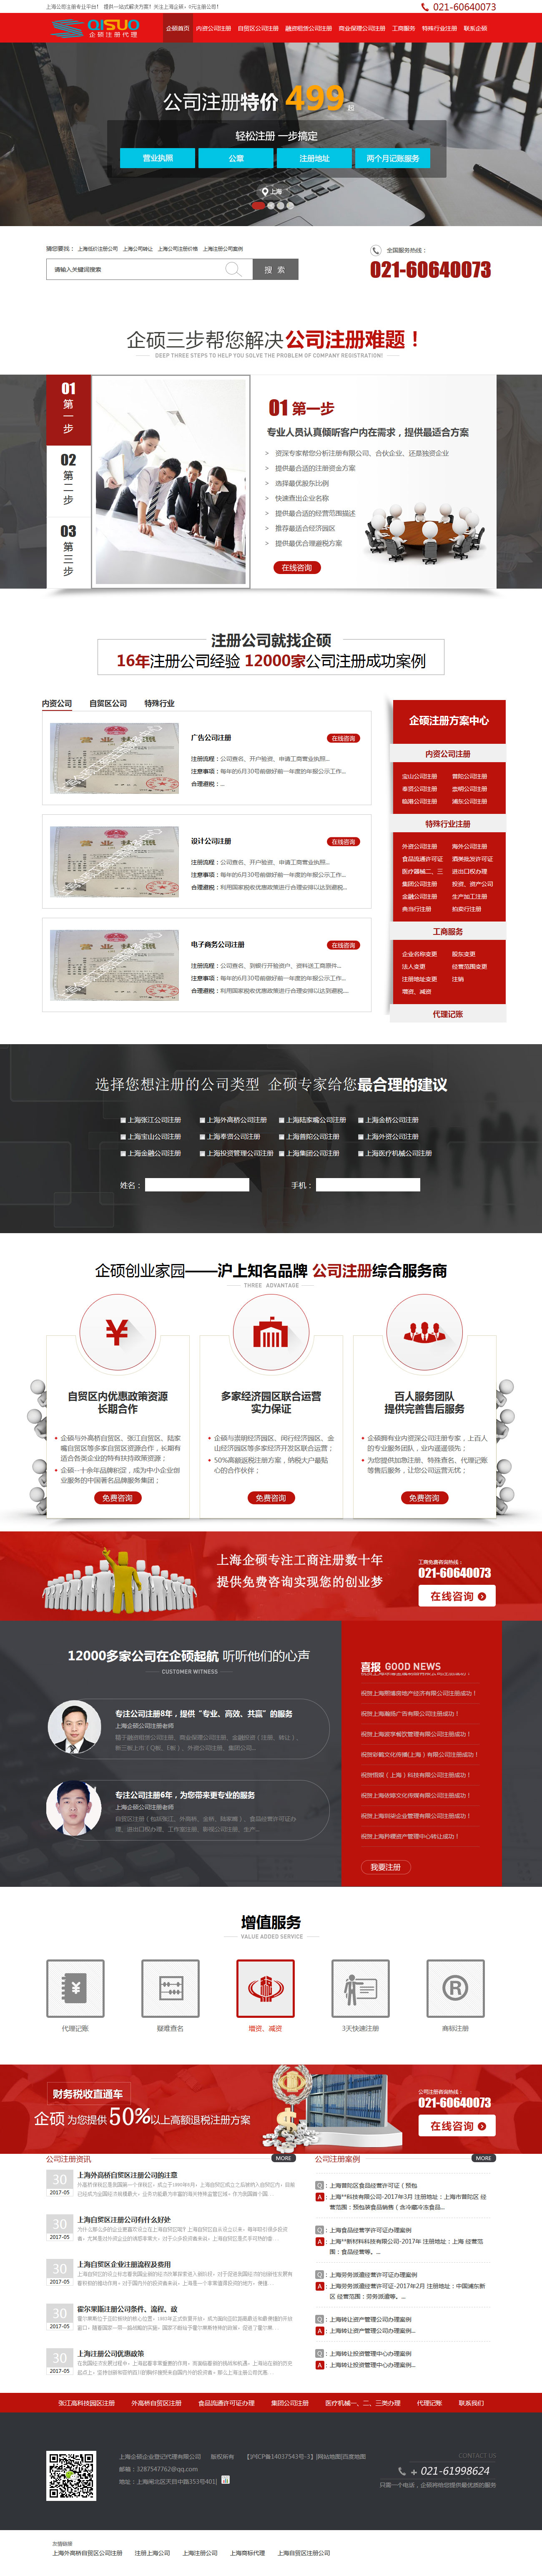 上海企硕企业登记代理有限公司